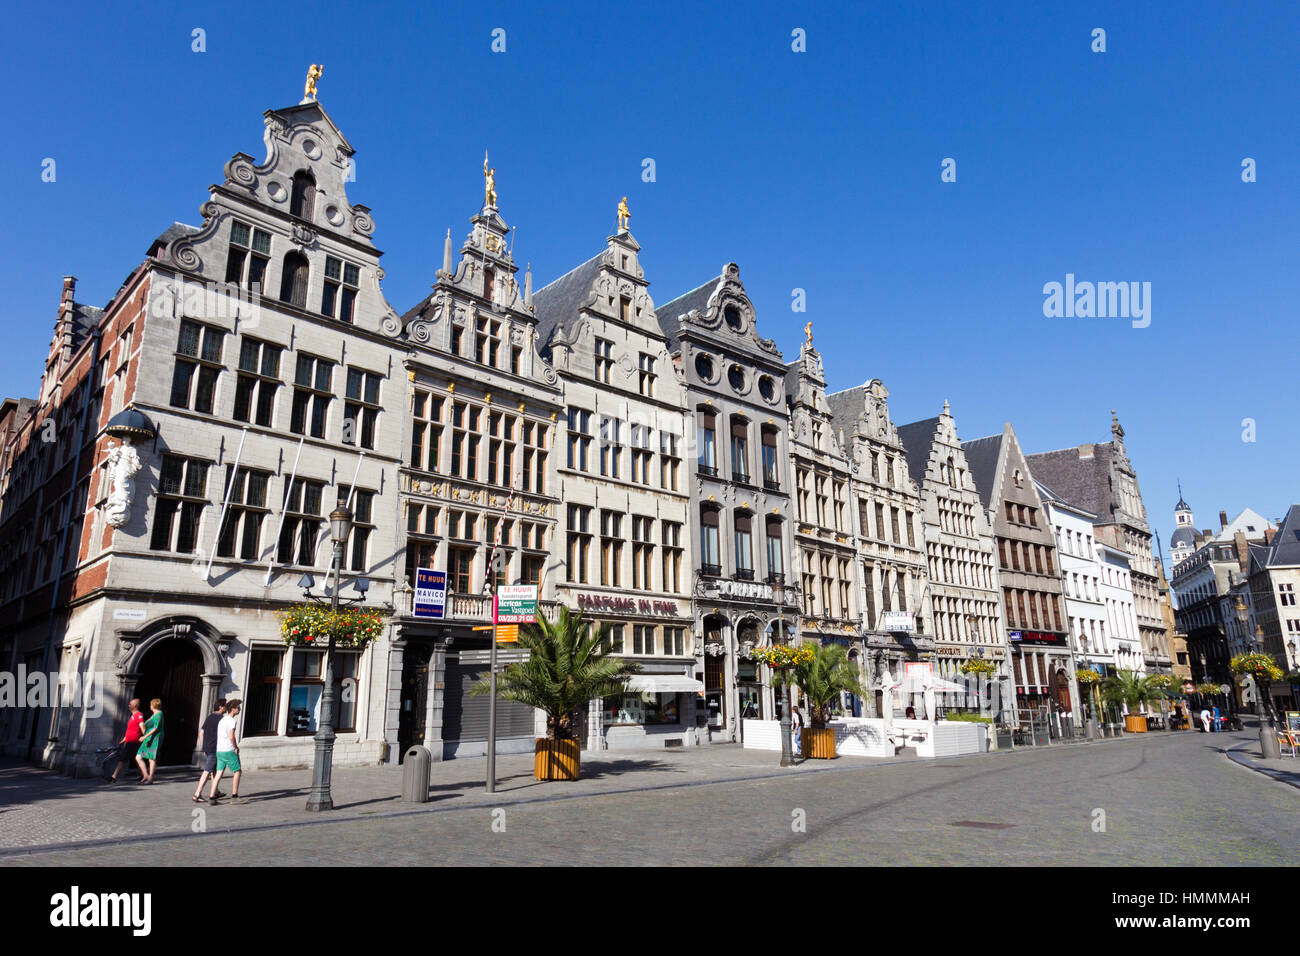 Anversa - luglio 9: Case di Grote-Markt nel centro storico il 9 luglio 2013 ad Anversa, in Belgio. Anversa è la seconda città più grande in Belgio wi Foto Stock